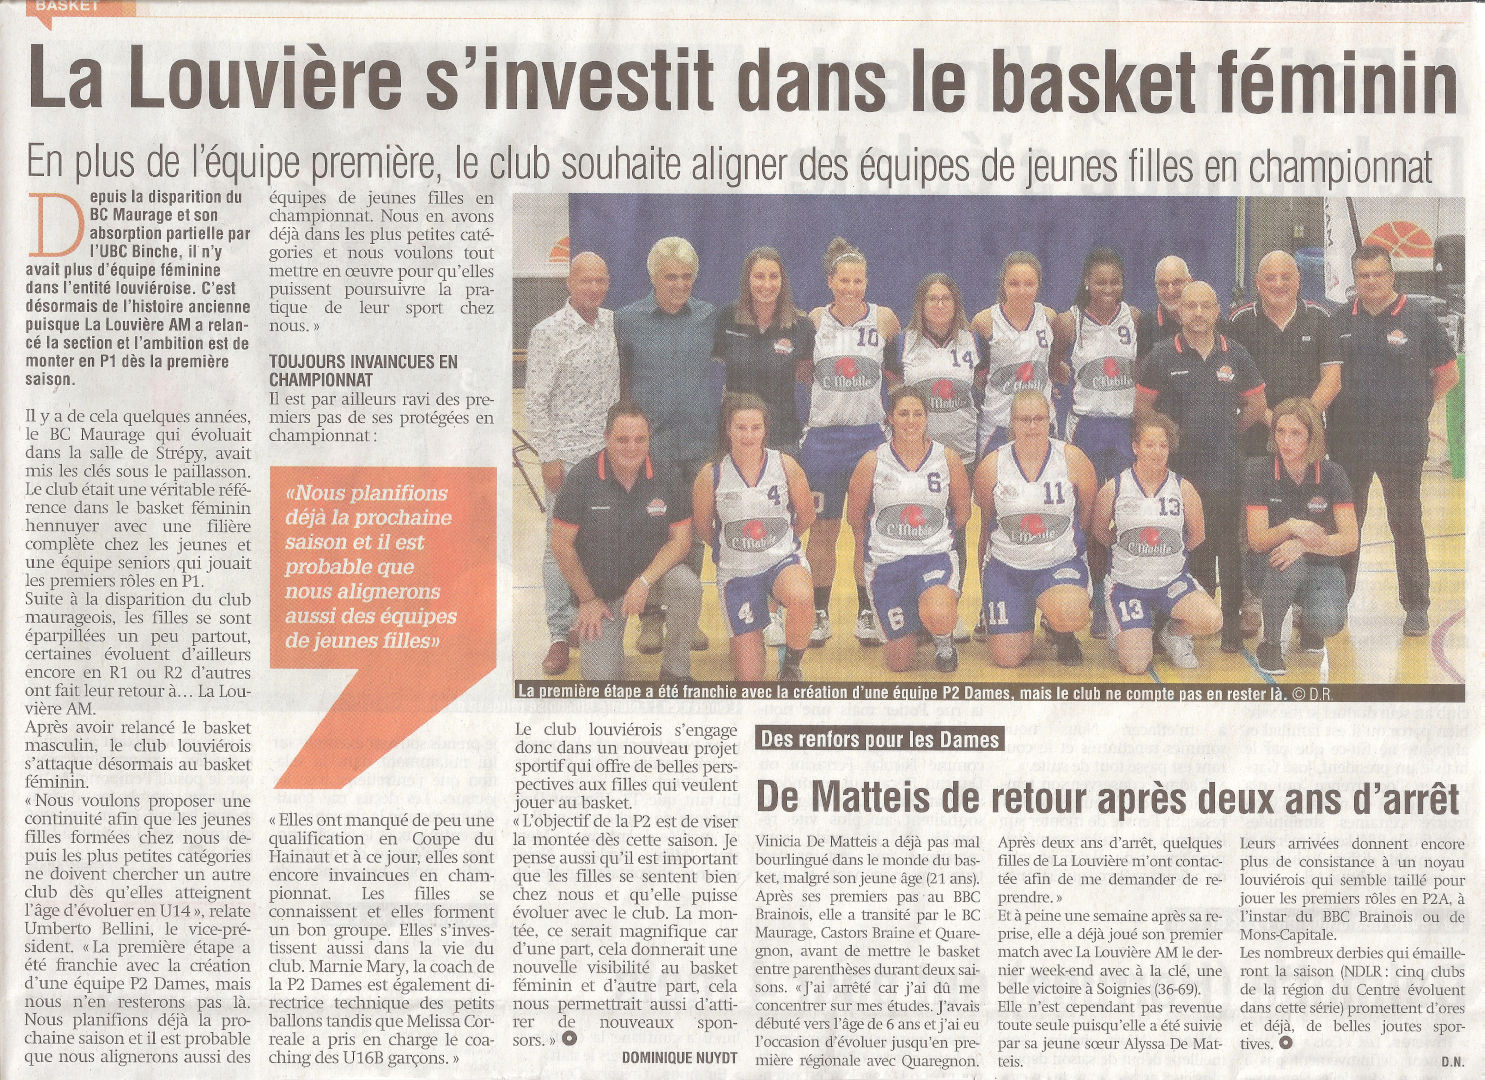 2019-10-01 - Basket Feminin La Louviere